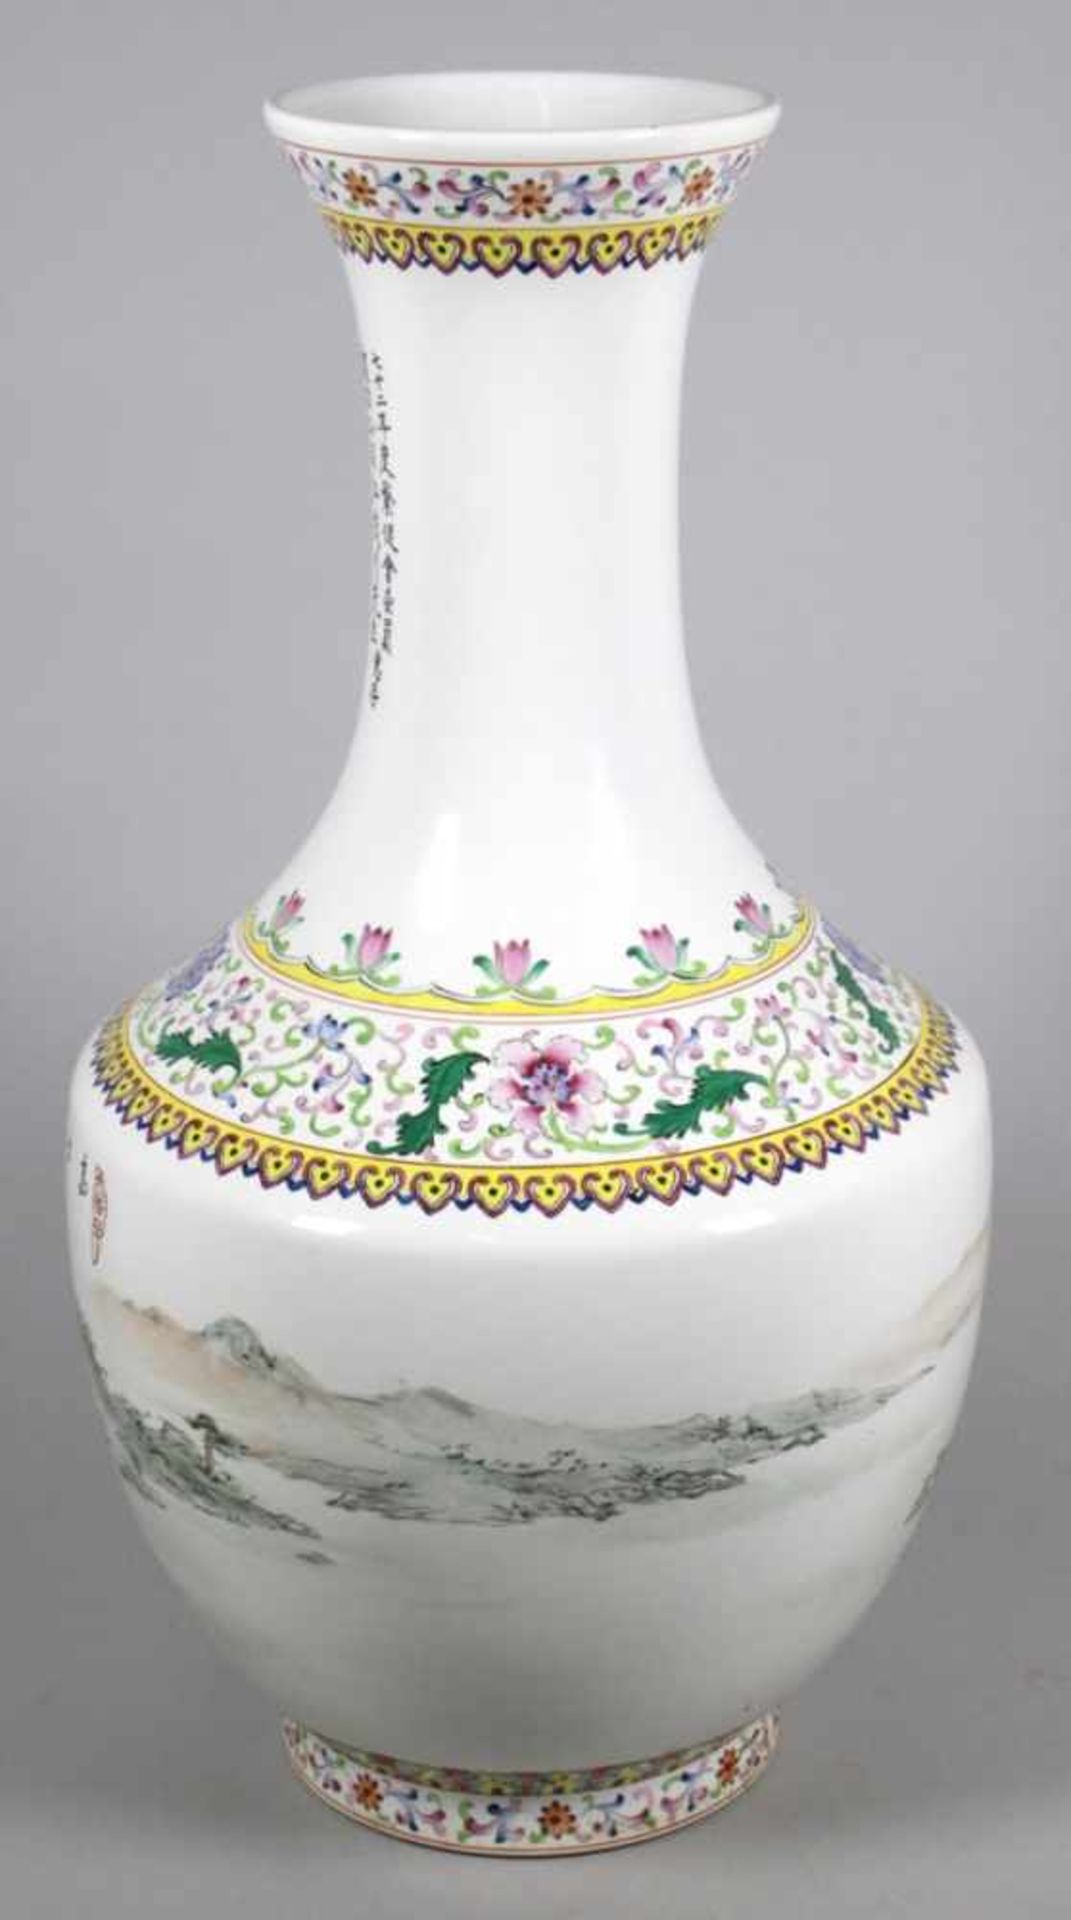 Keramik-Ziervase, China, 2. Hälfte 20. Jh., runder Stand, bauchiger Korpus,< - Bild 2 aus 4